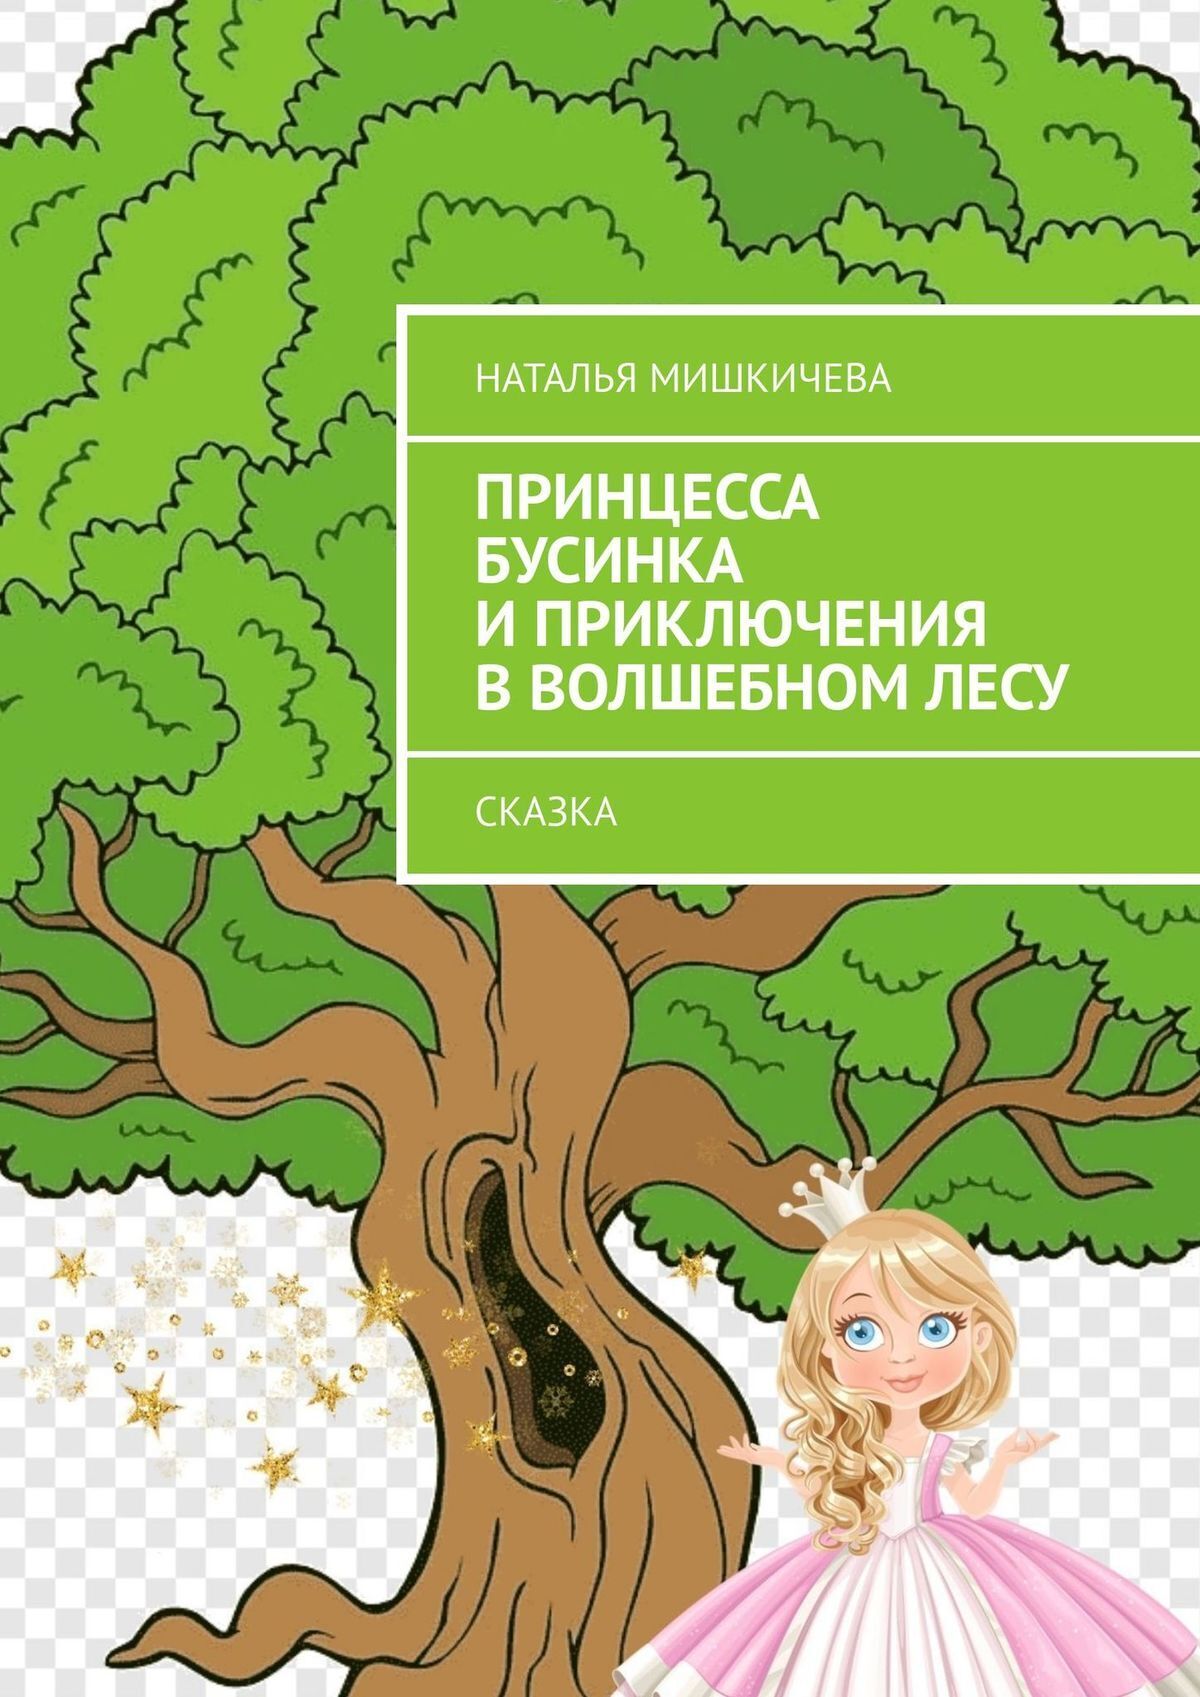 Принцесса Бусинка и приключения в волшебном лесу. Сказка – Наталья Мишкичева